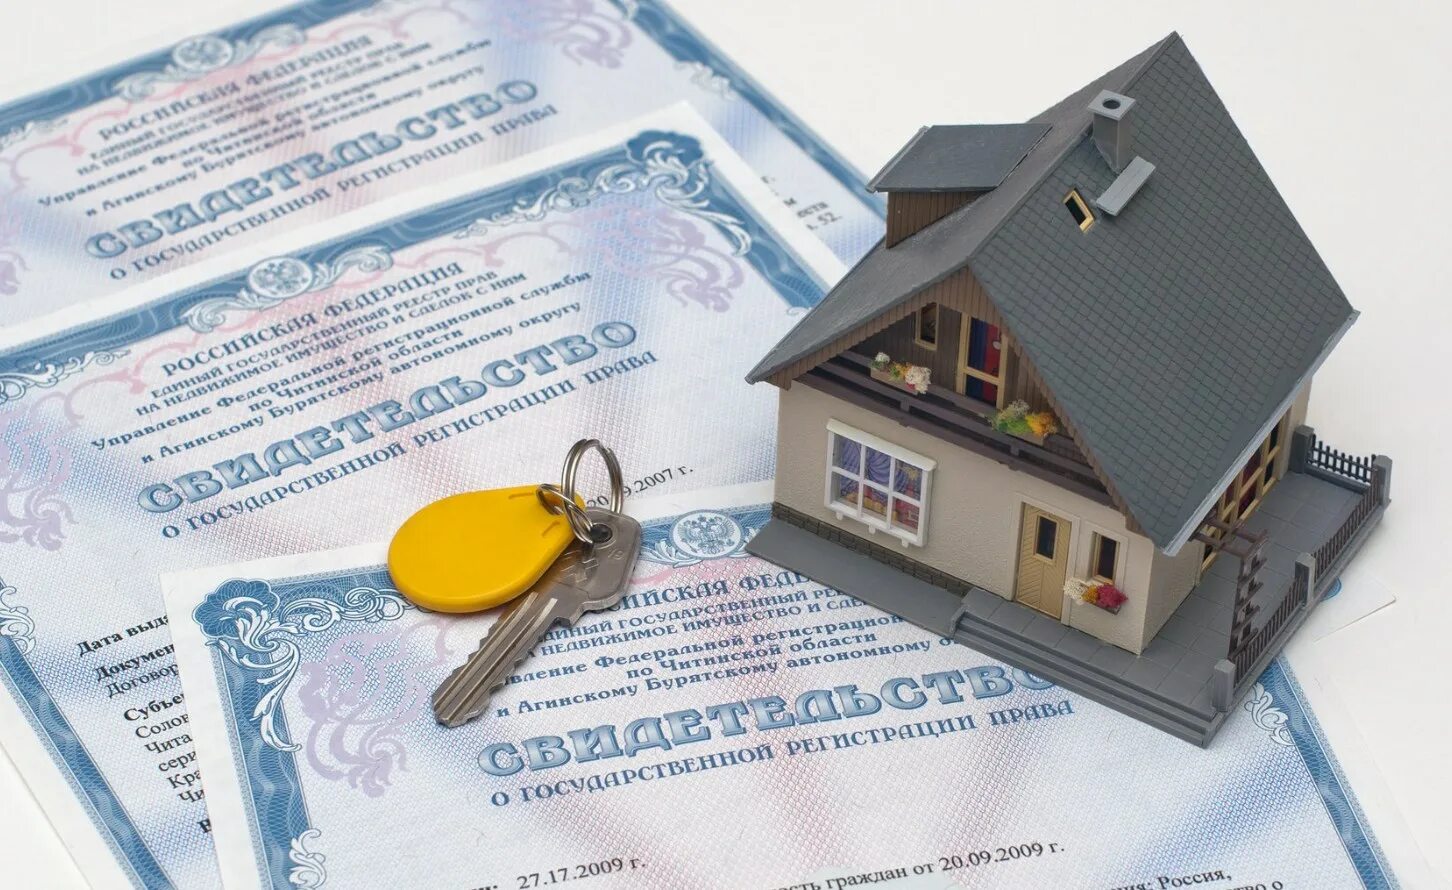 Наследство ипотечной квартиры. Право собственности на недвижимость. Регистрация недвижимости. Документы на недвижимость. Недвижимость и недвижимое имущество.